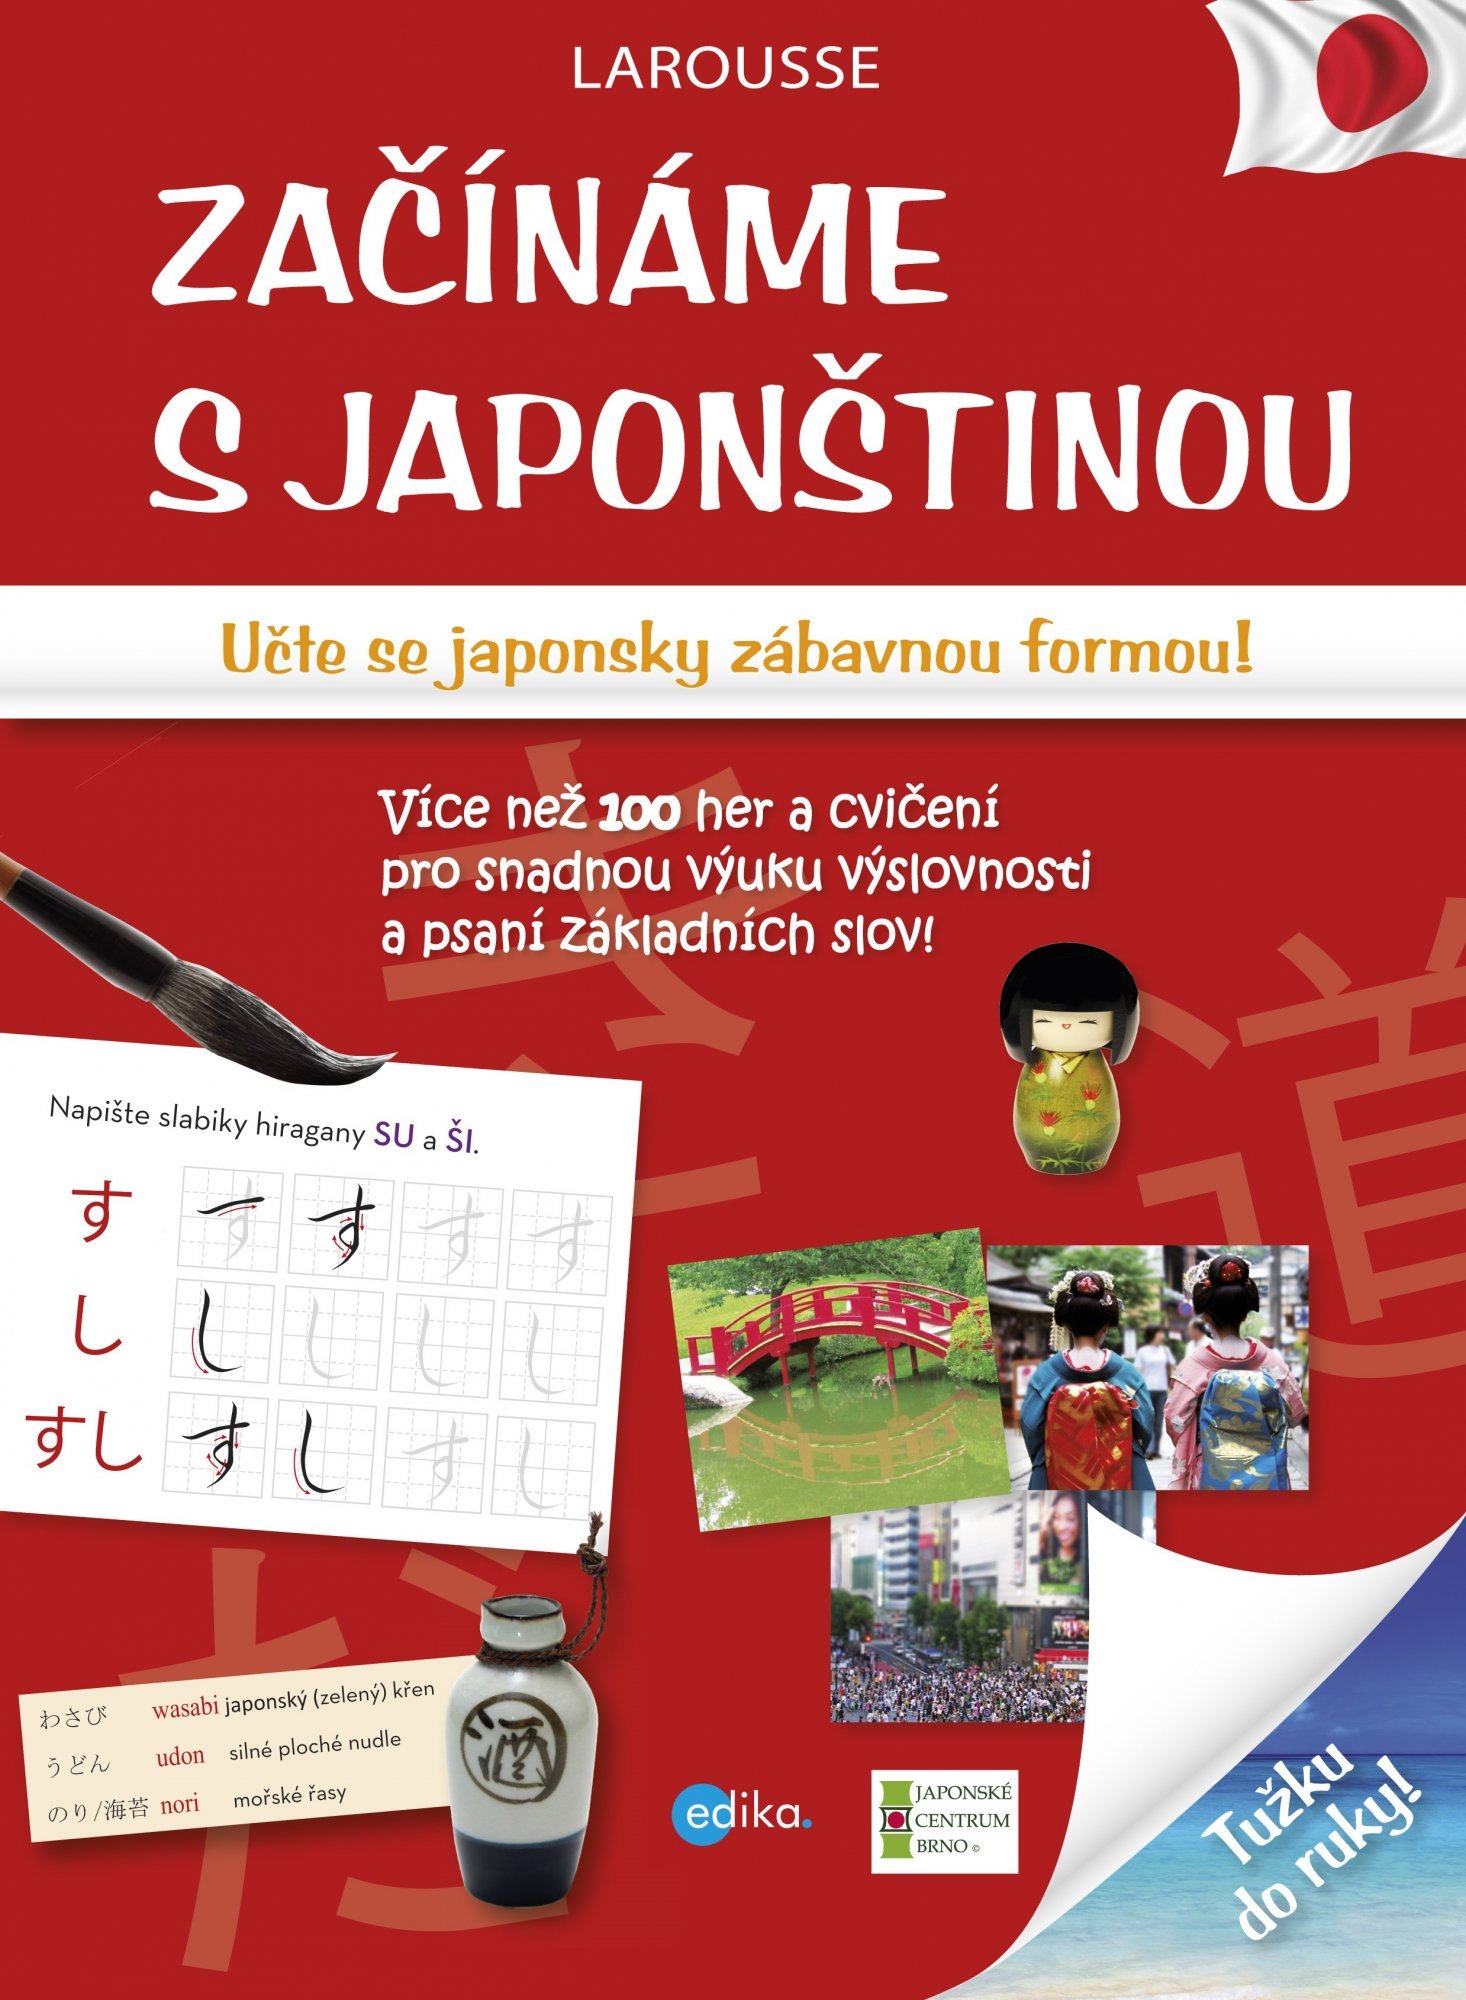 Začínáme s japonštinou - Učte se japonsky zábavnou formou! - Larousse